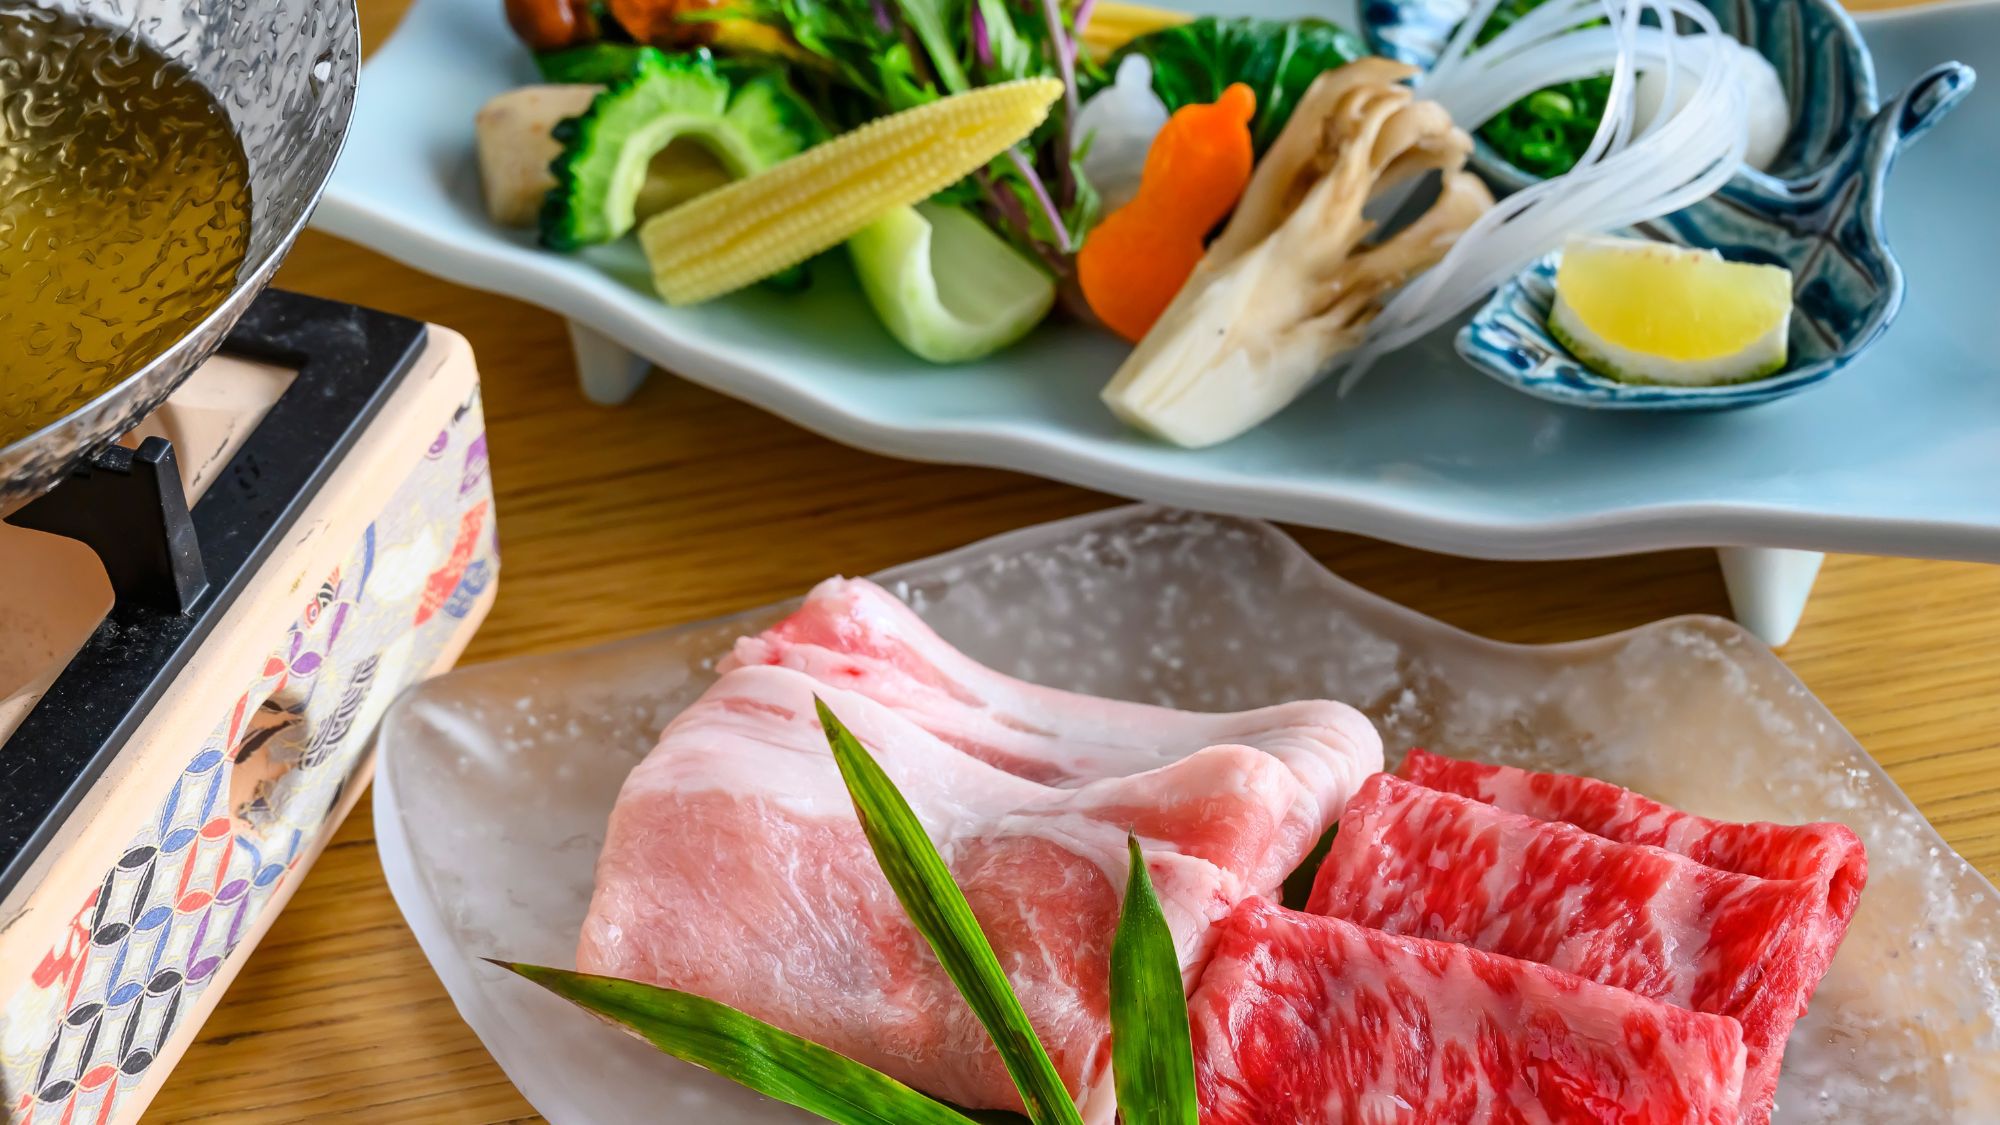 新鮮な夏野菜は旨味が染み出たお出しで味わうしゃぶしゃぶ。二種のお肉を食べ比べでどうぞ。